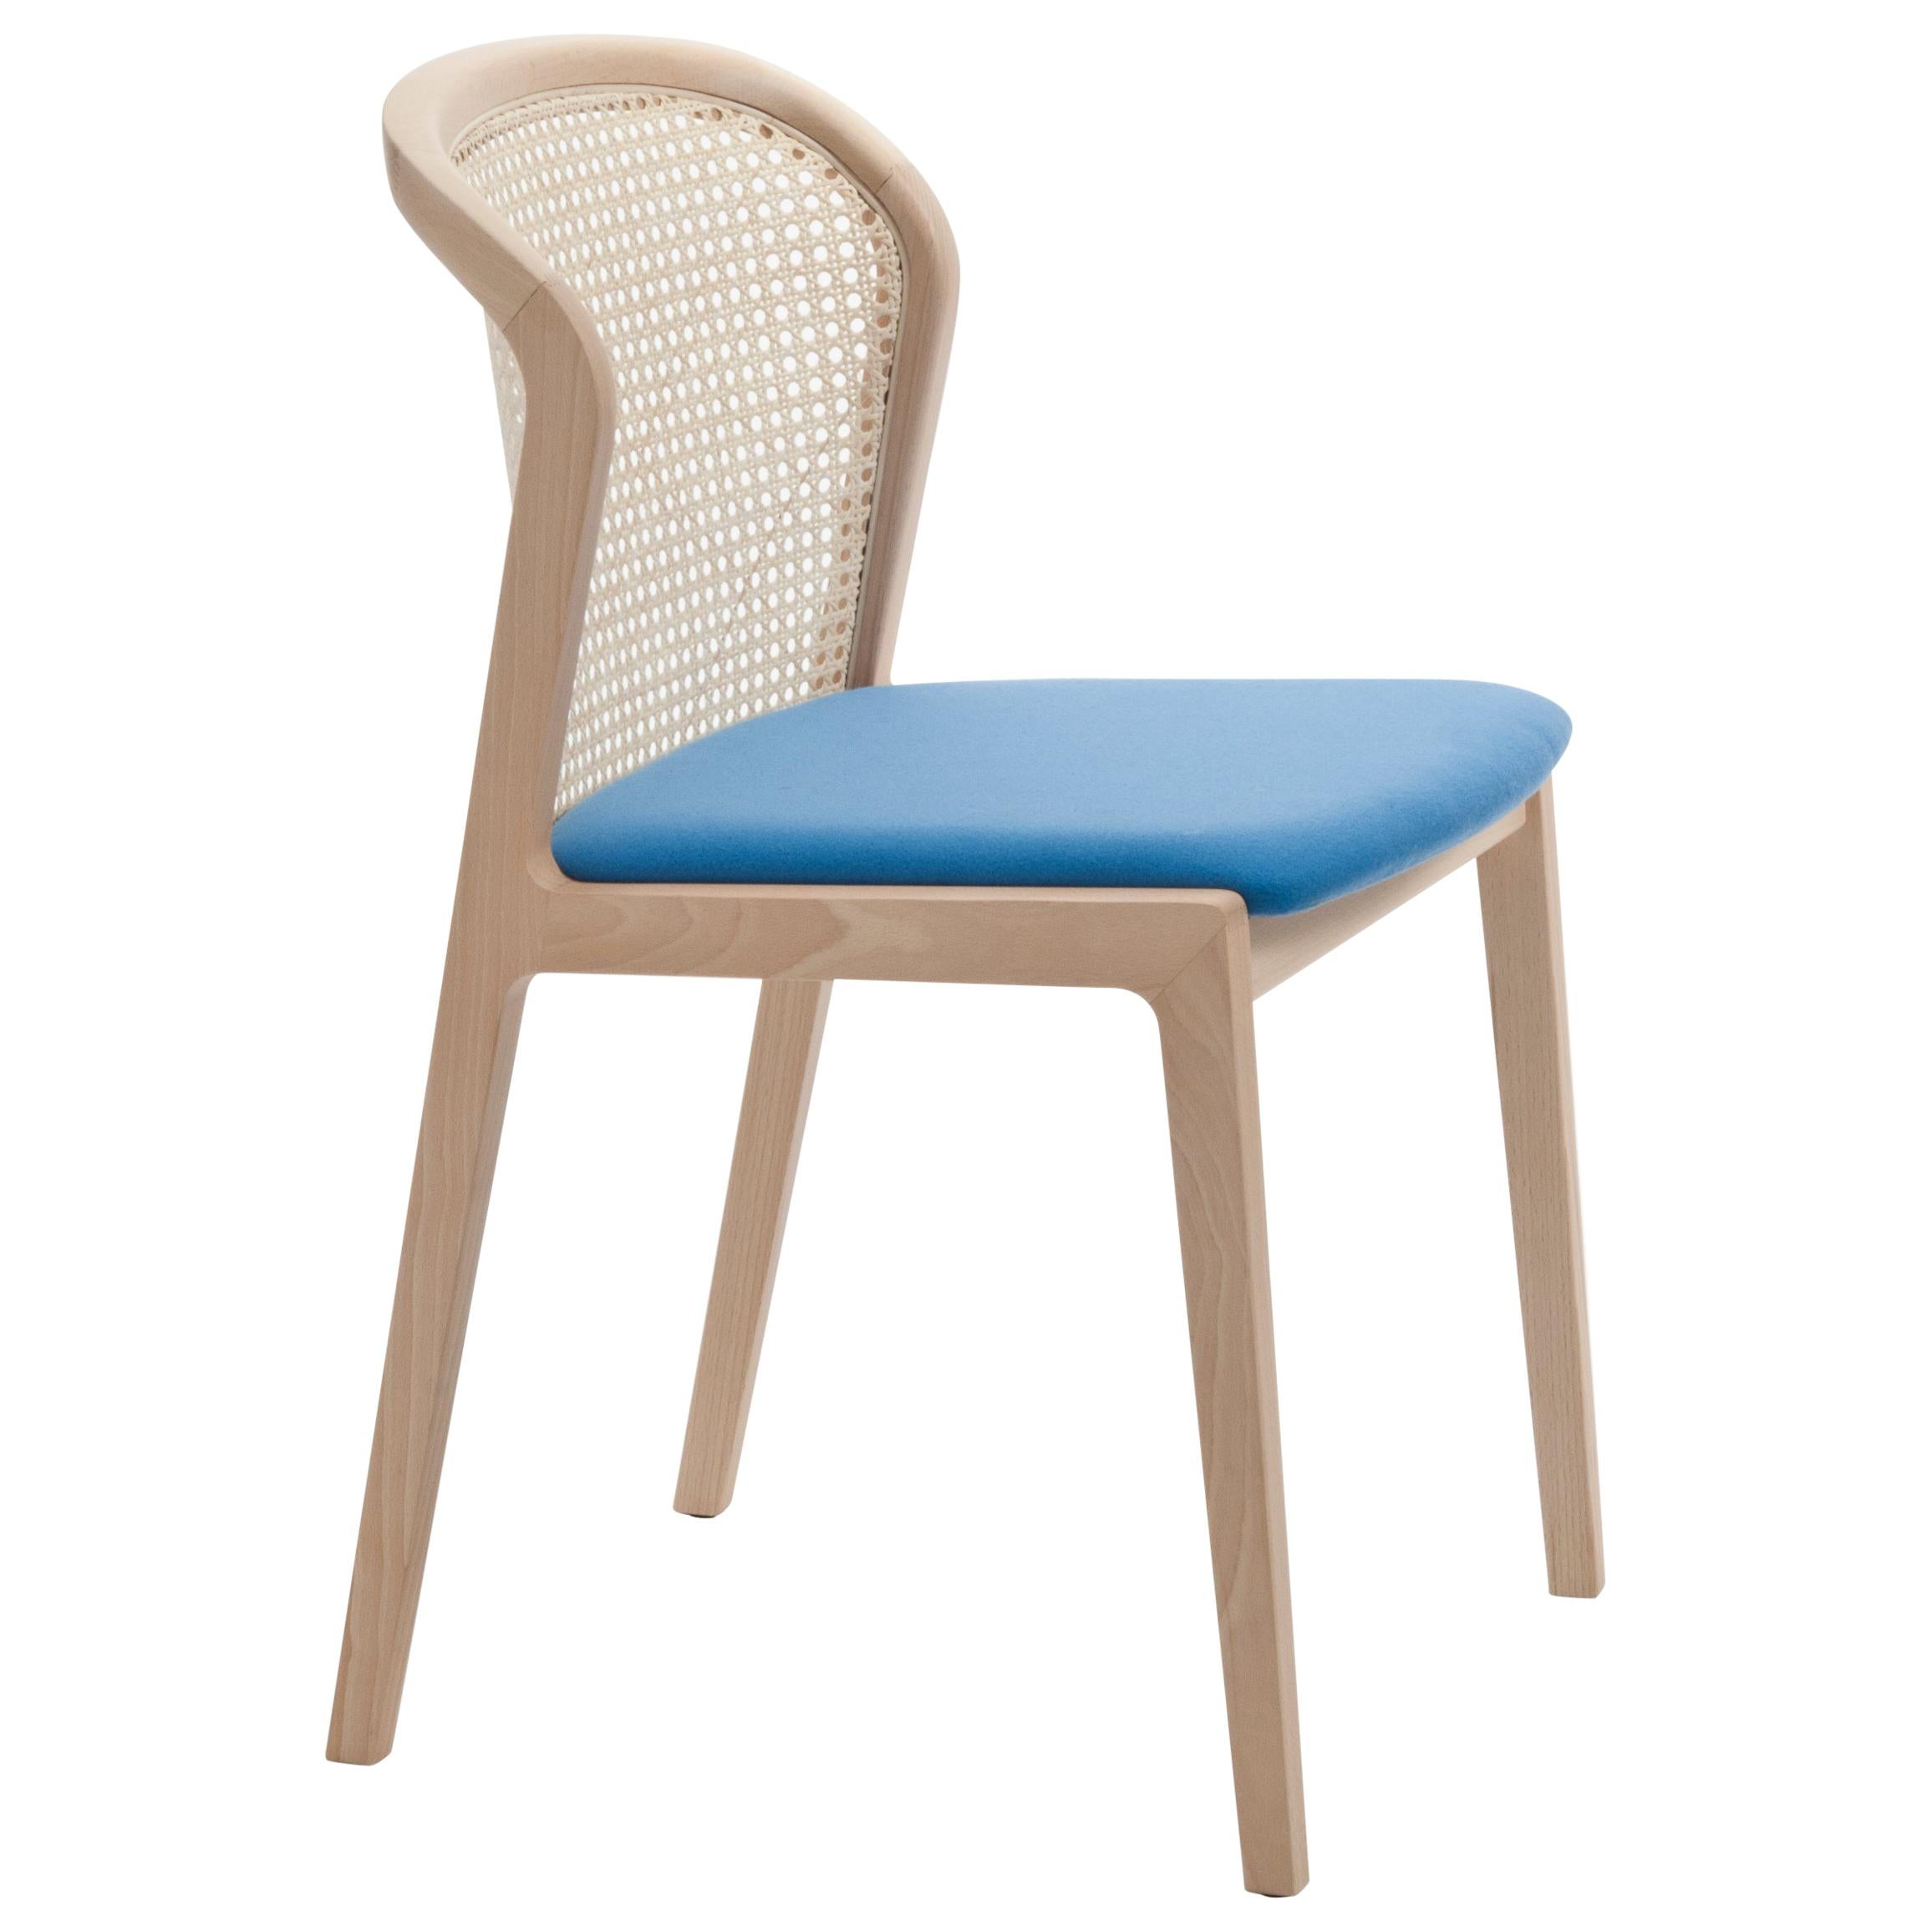 Chaise Vienna de Col, design moderne en bois et paille, assise tapissée azurée